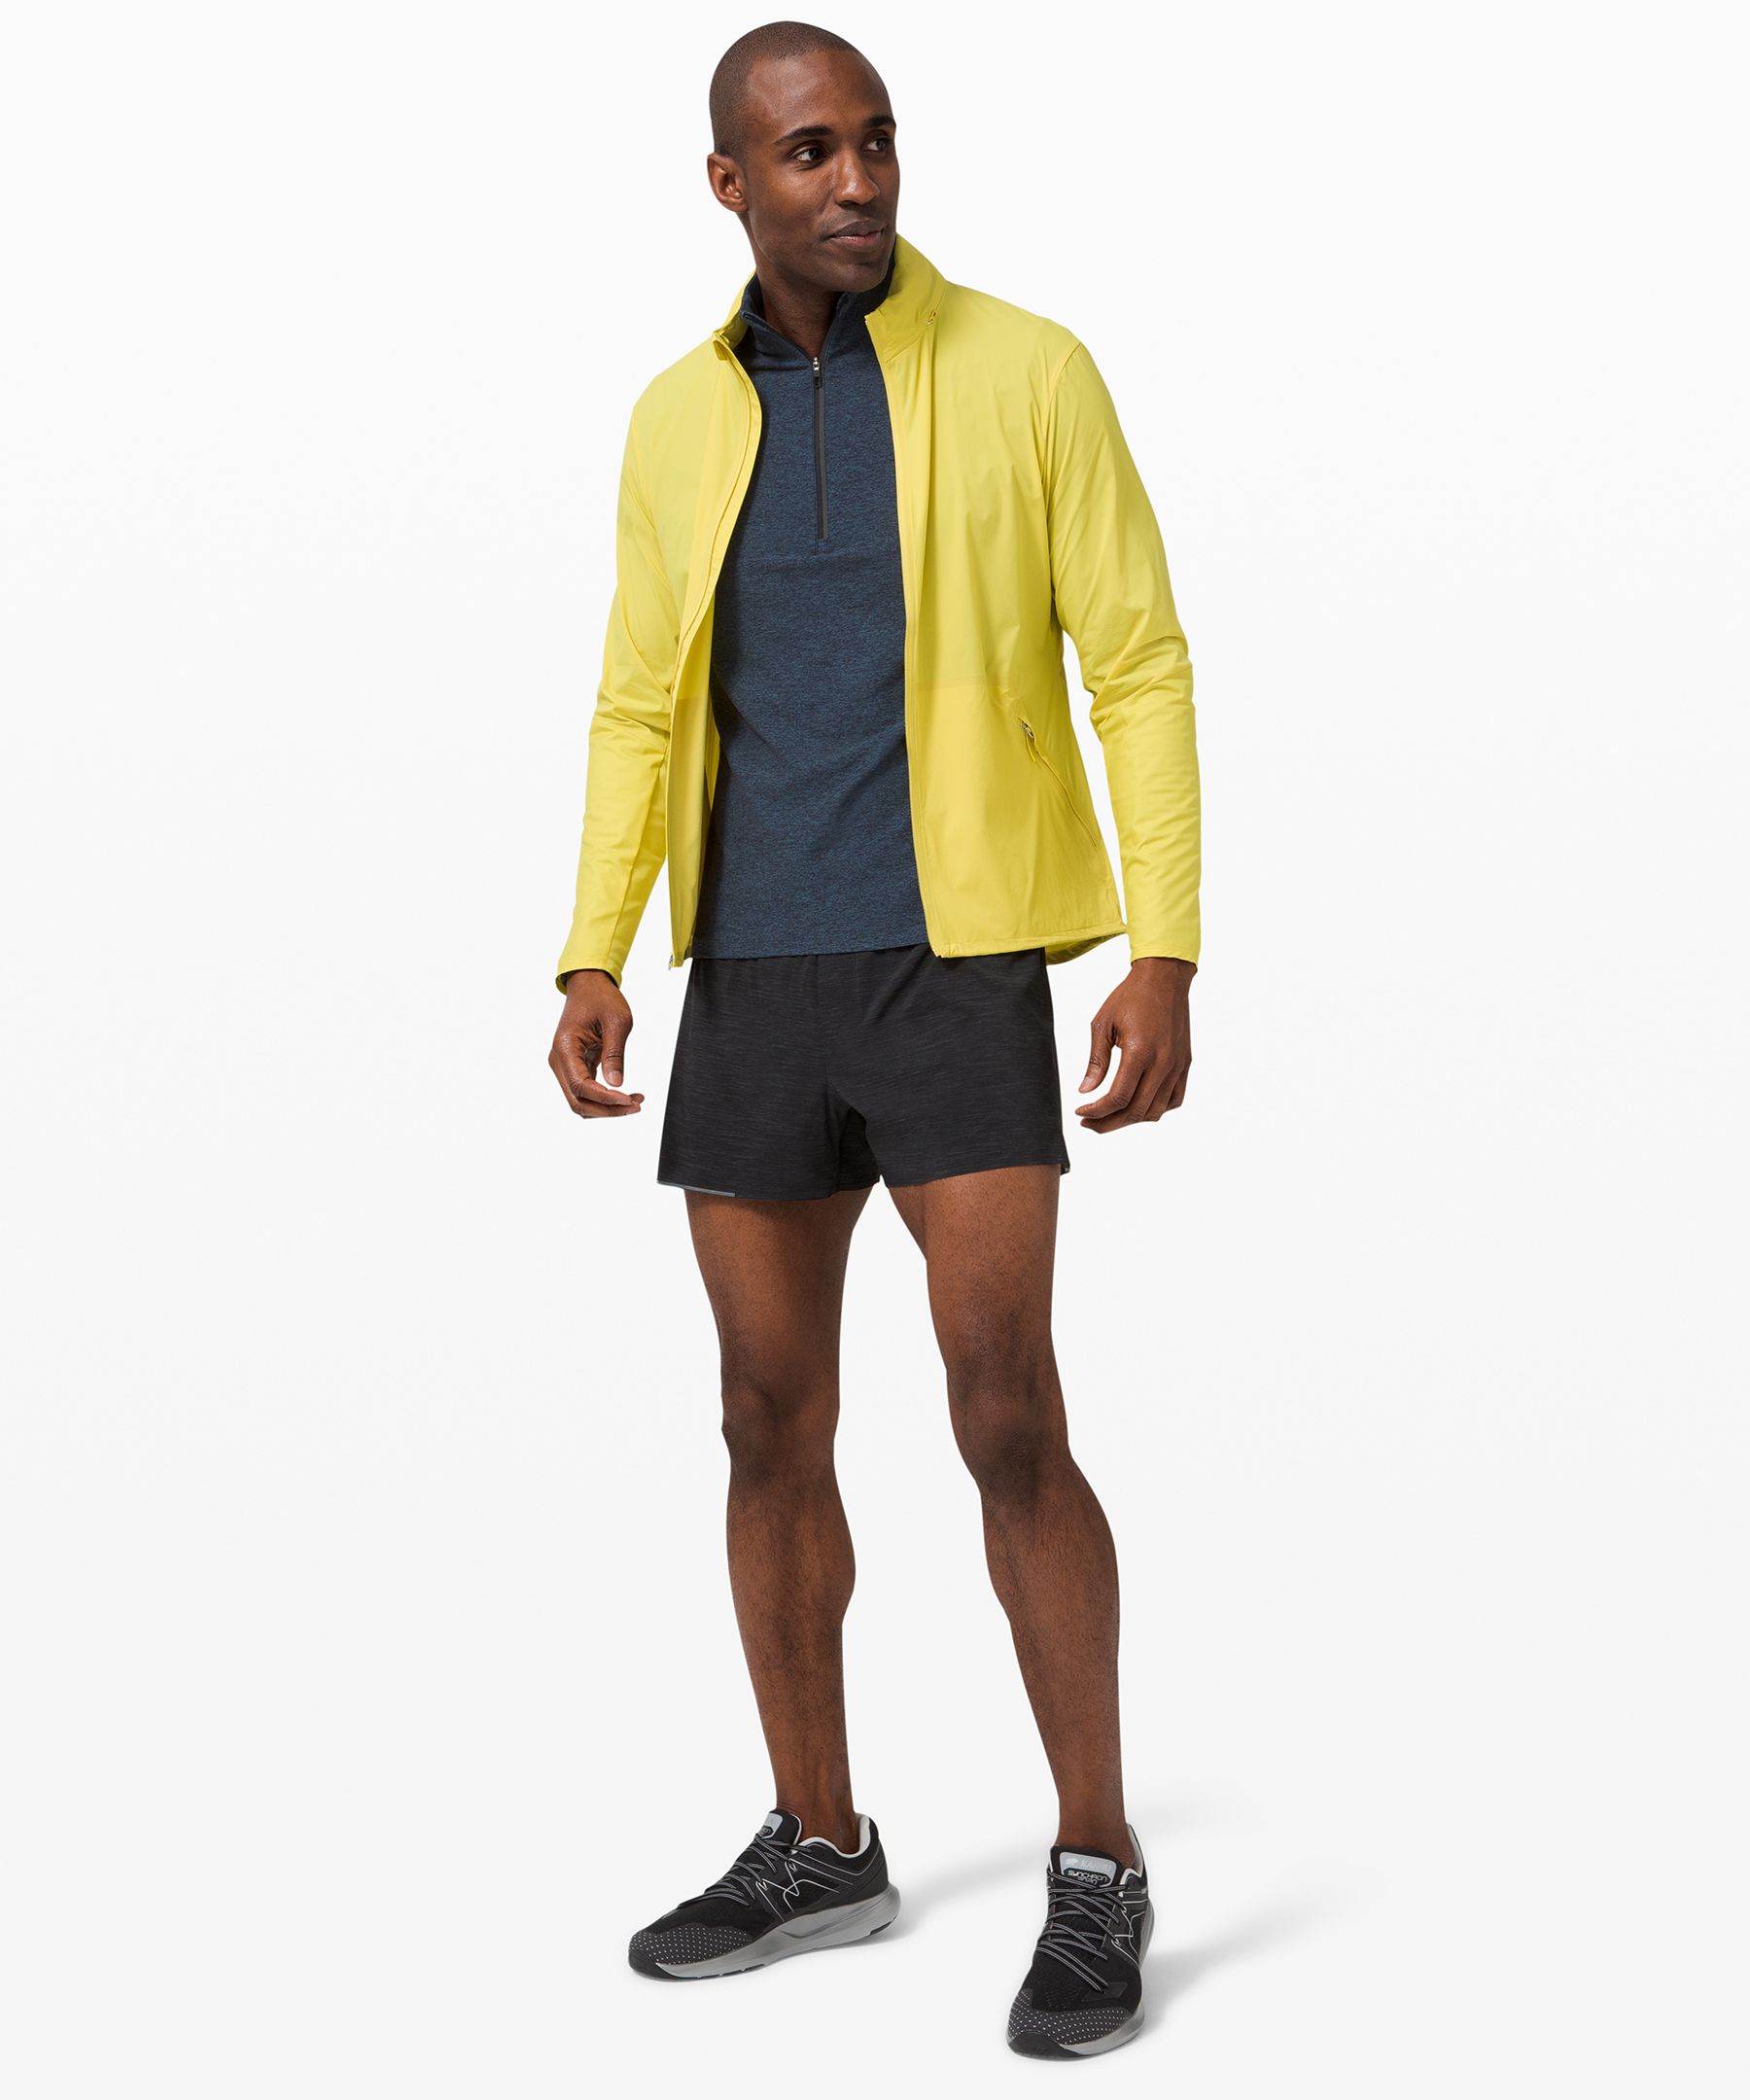 New lululemon surge 4” shorts - Athletic apparel